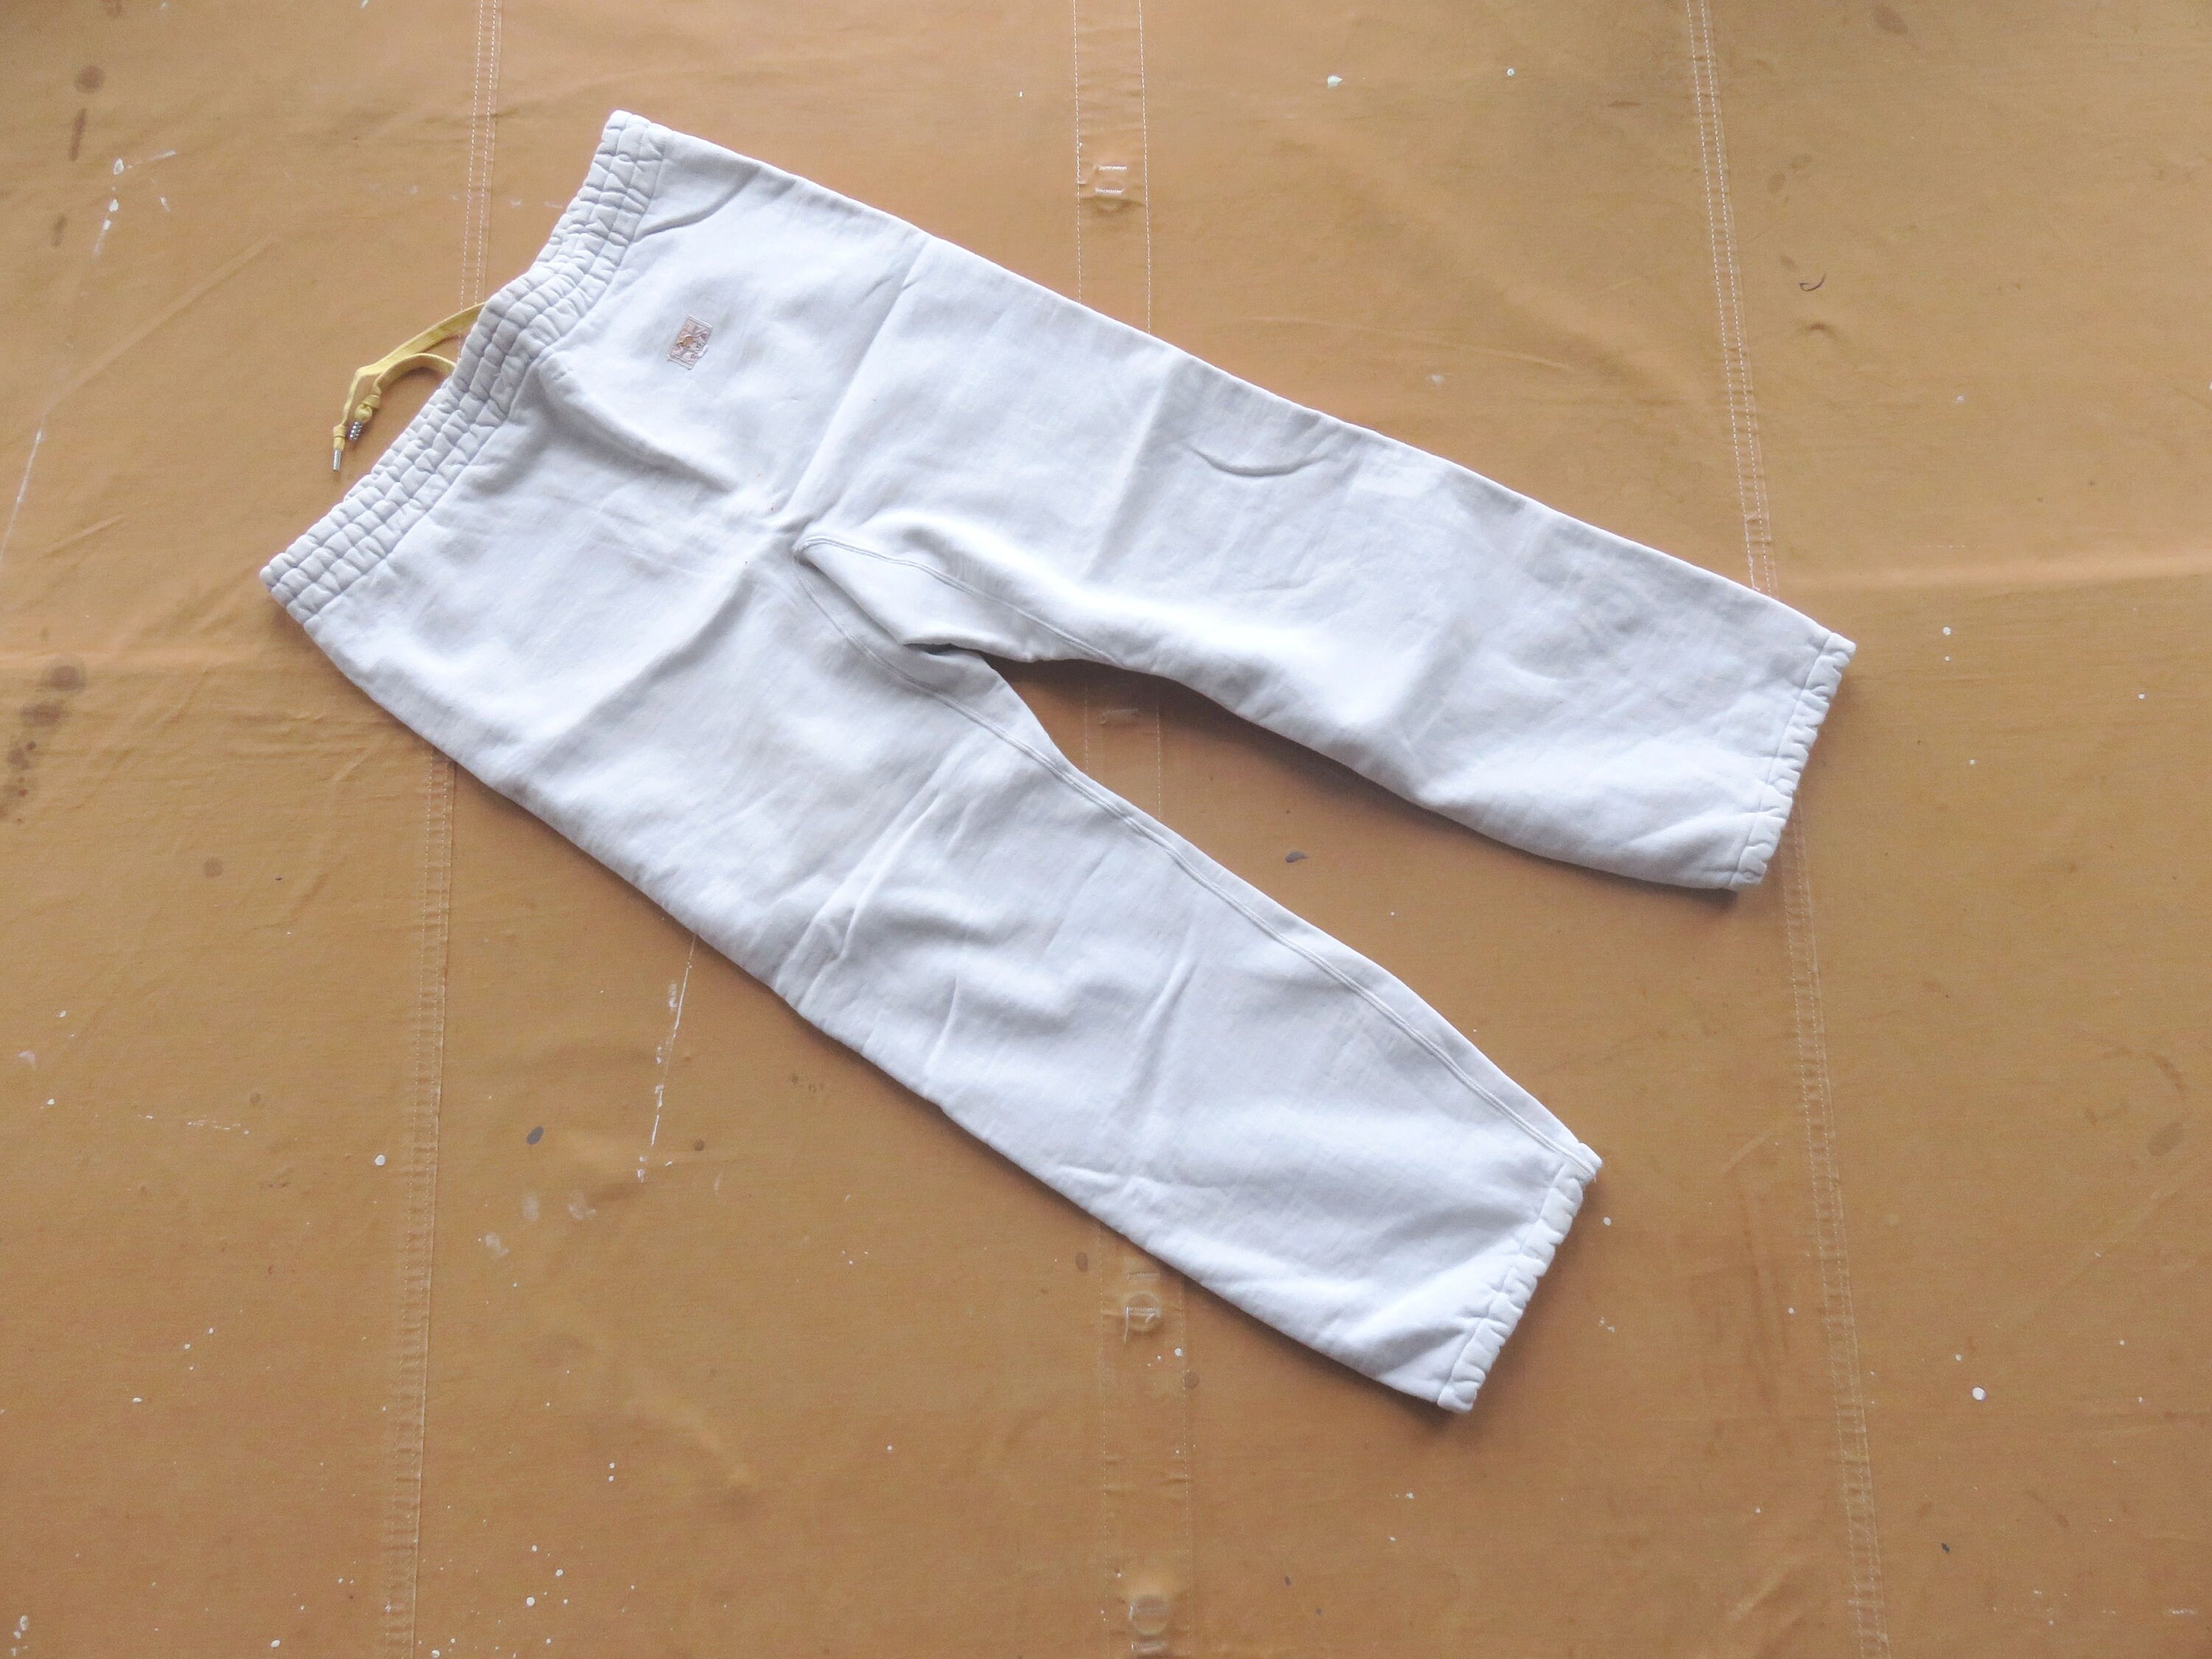 35 Waist 60s Cotton Sweatpants / White Cotton 1950s 1960s - Etsy